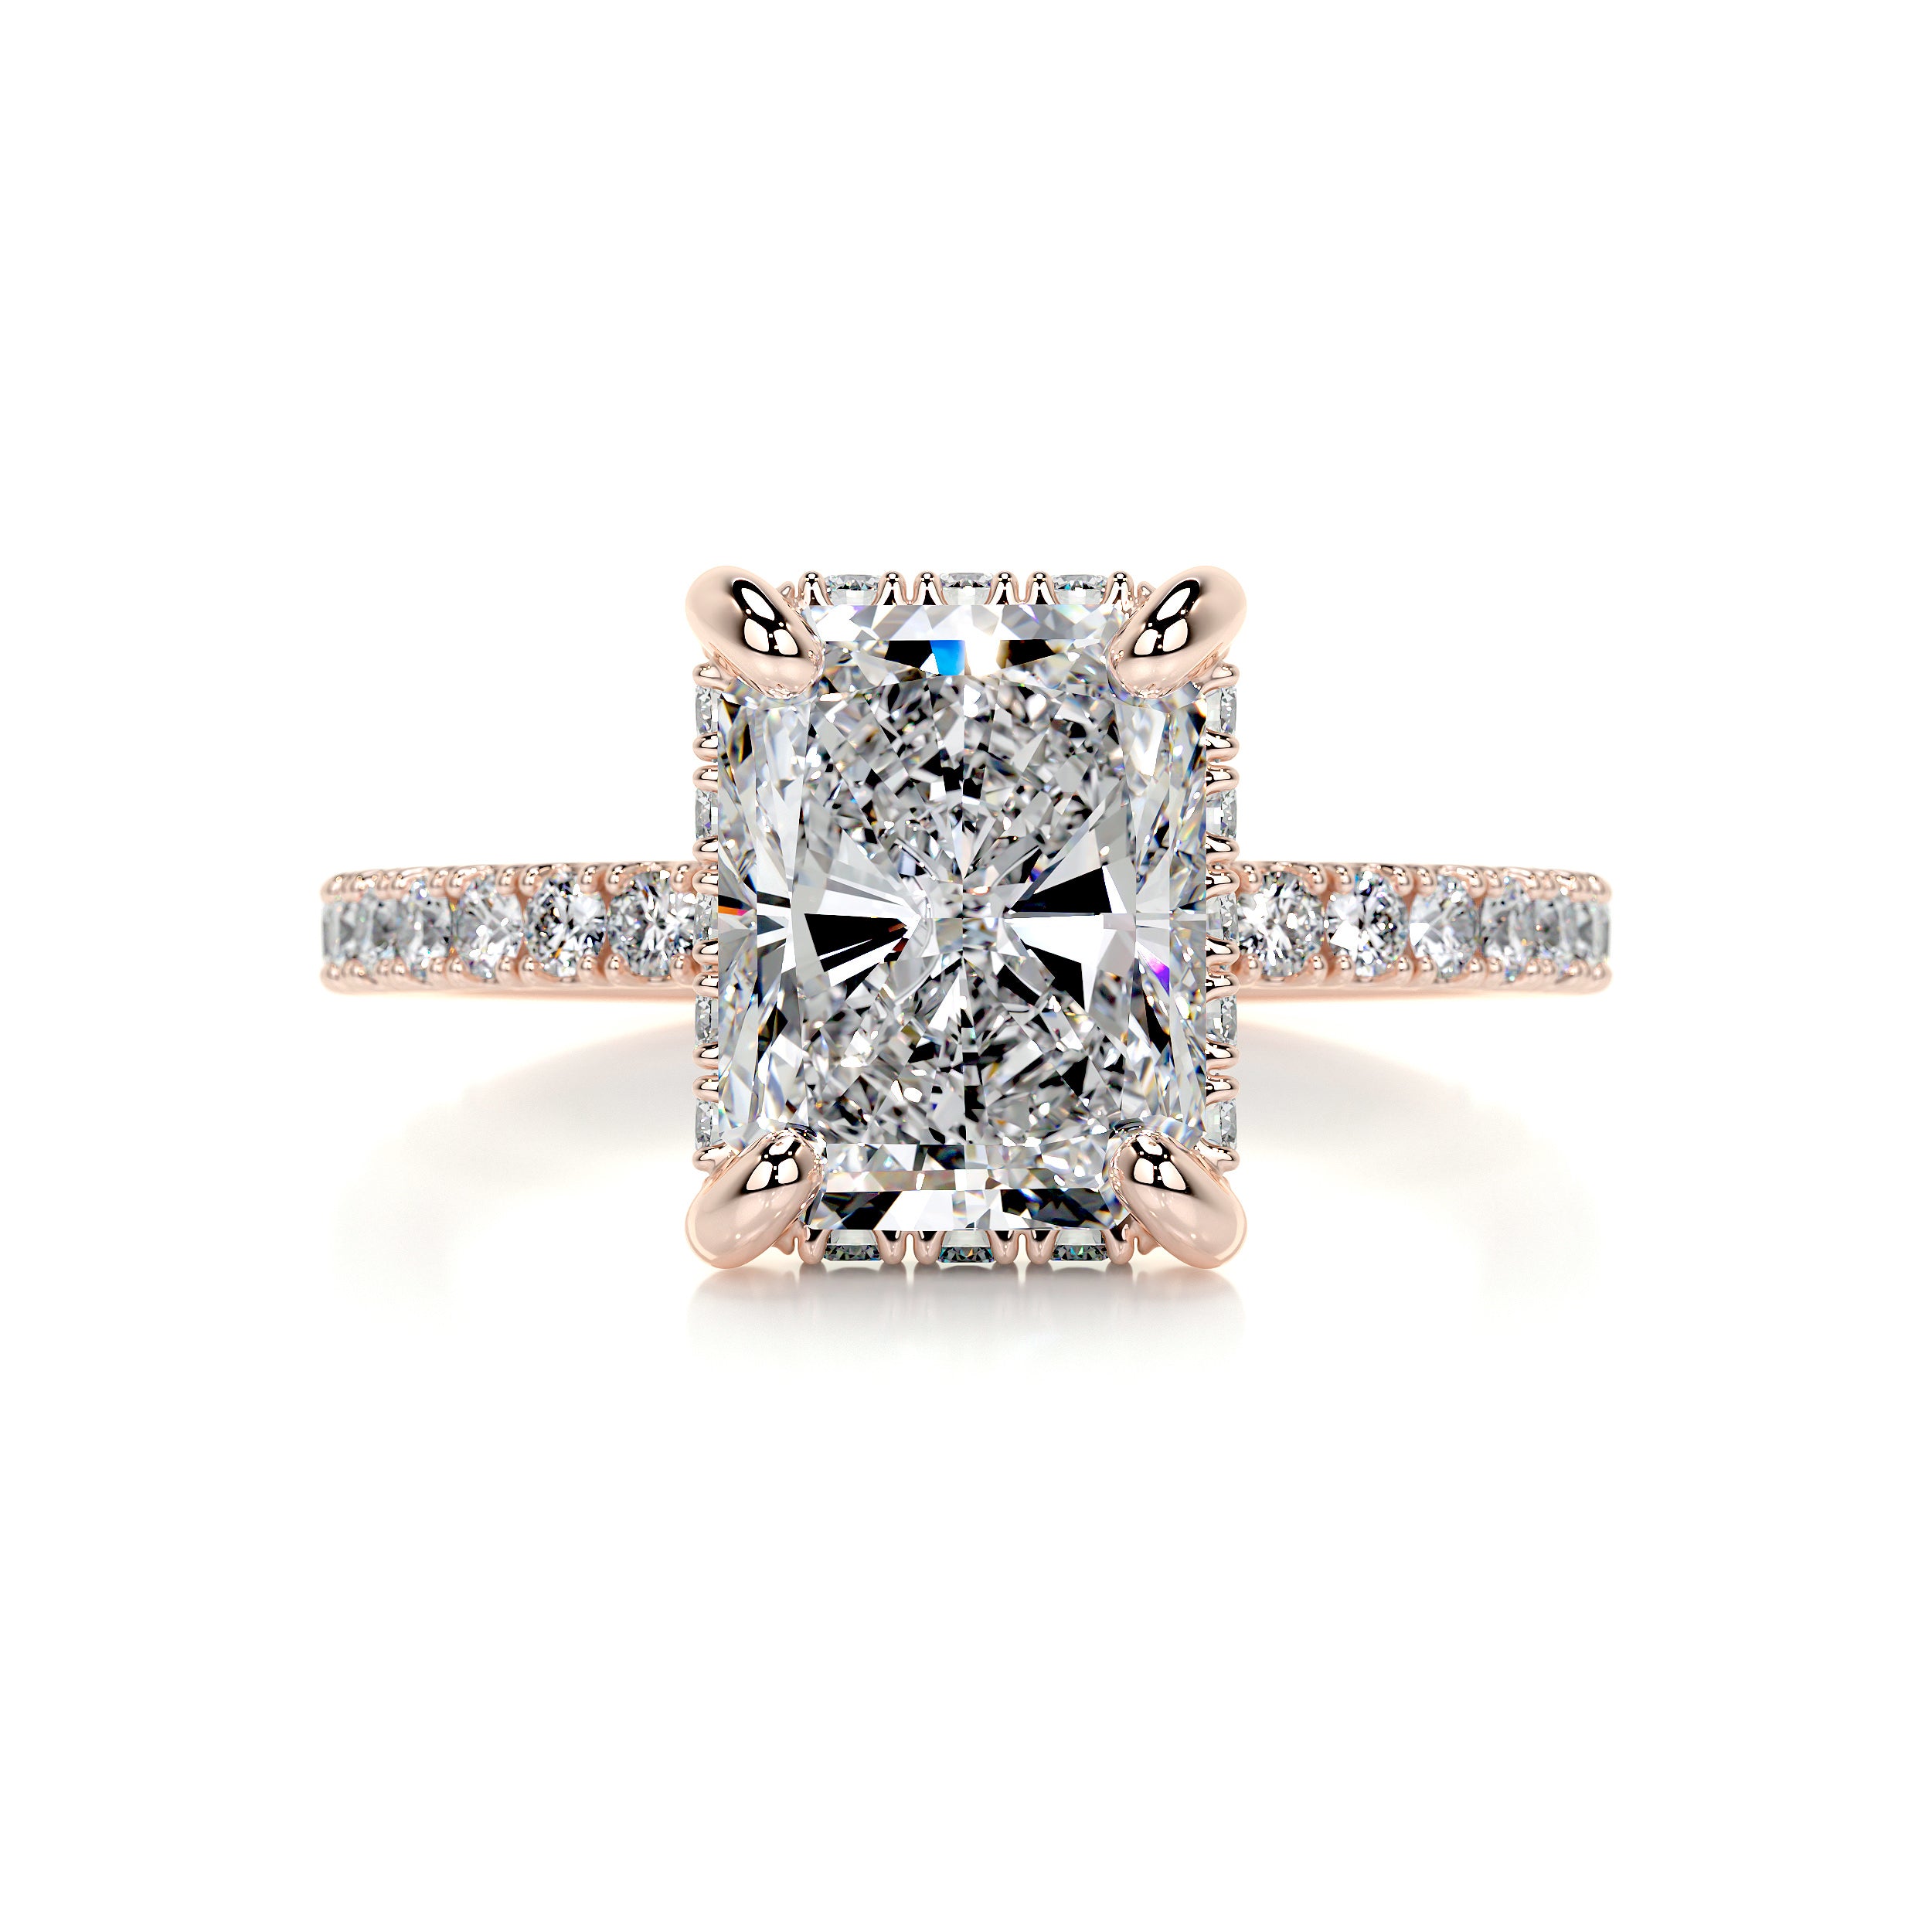 Luna Diamond Engagement Ring   (2.5 Carat) -14K Rose Gold